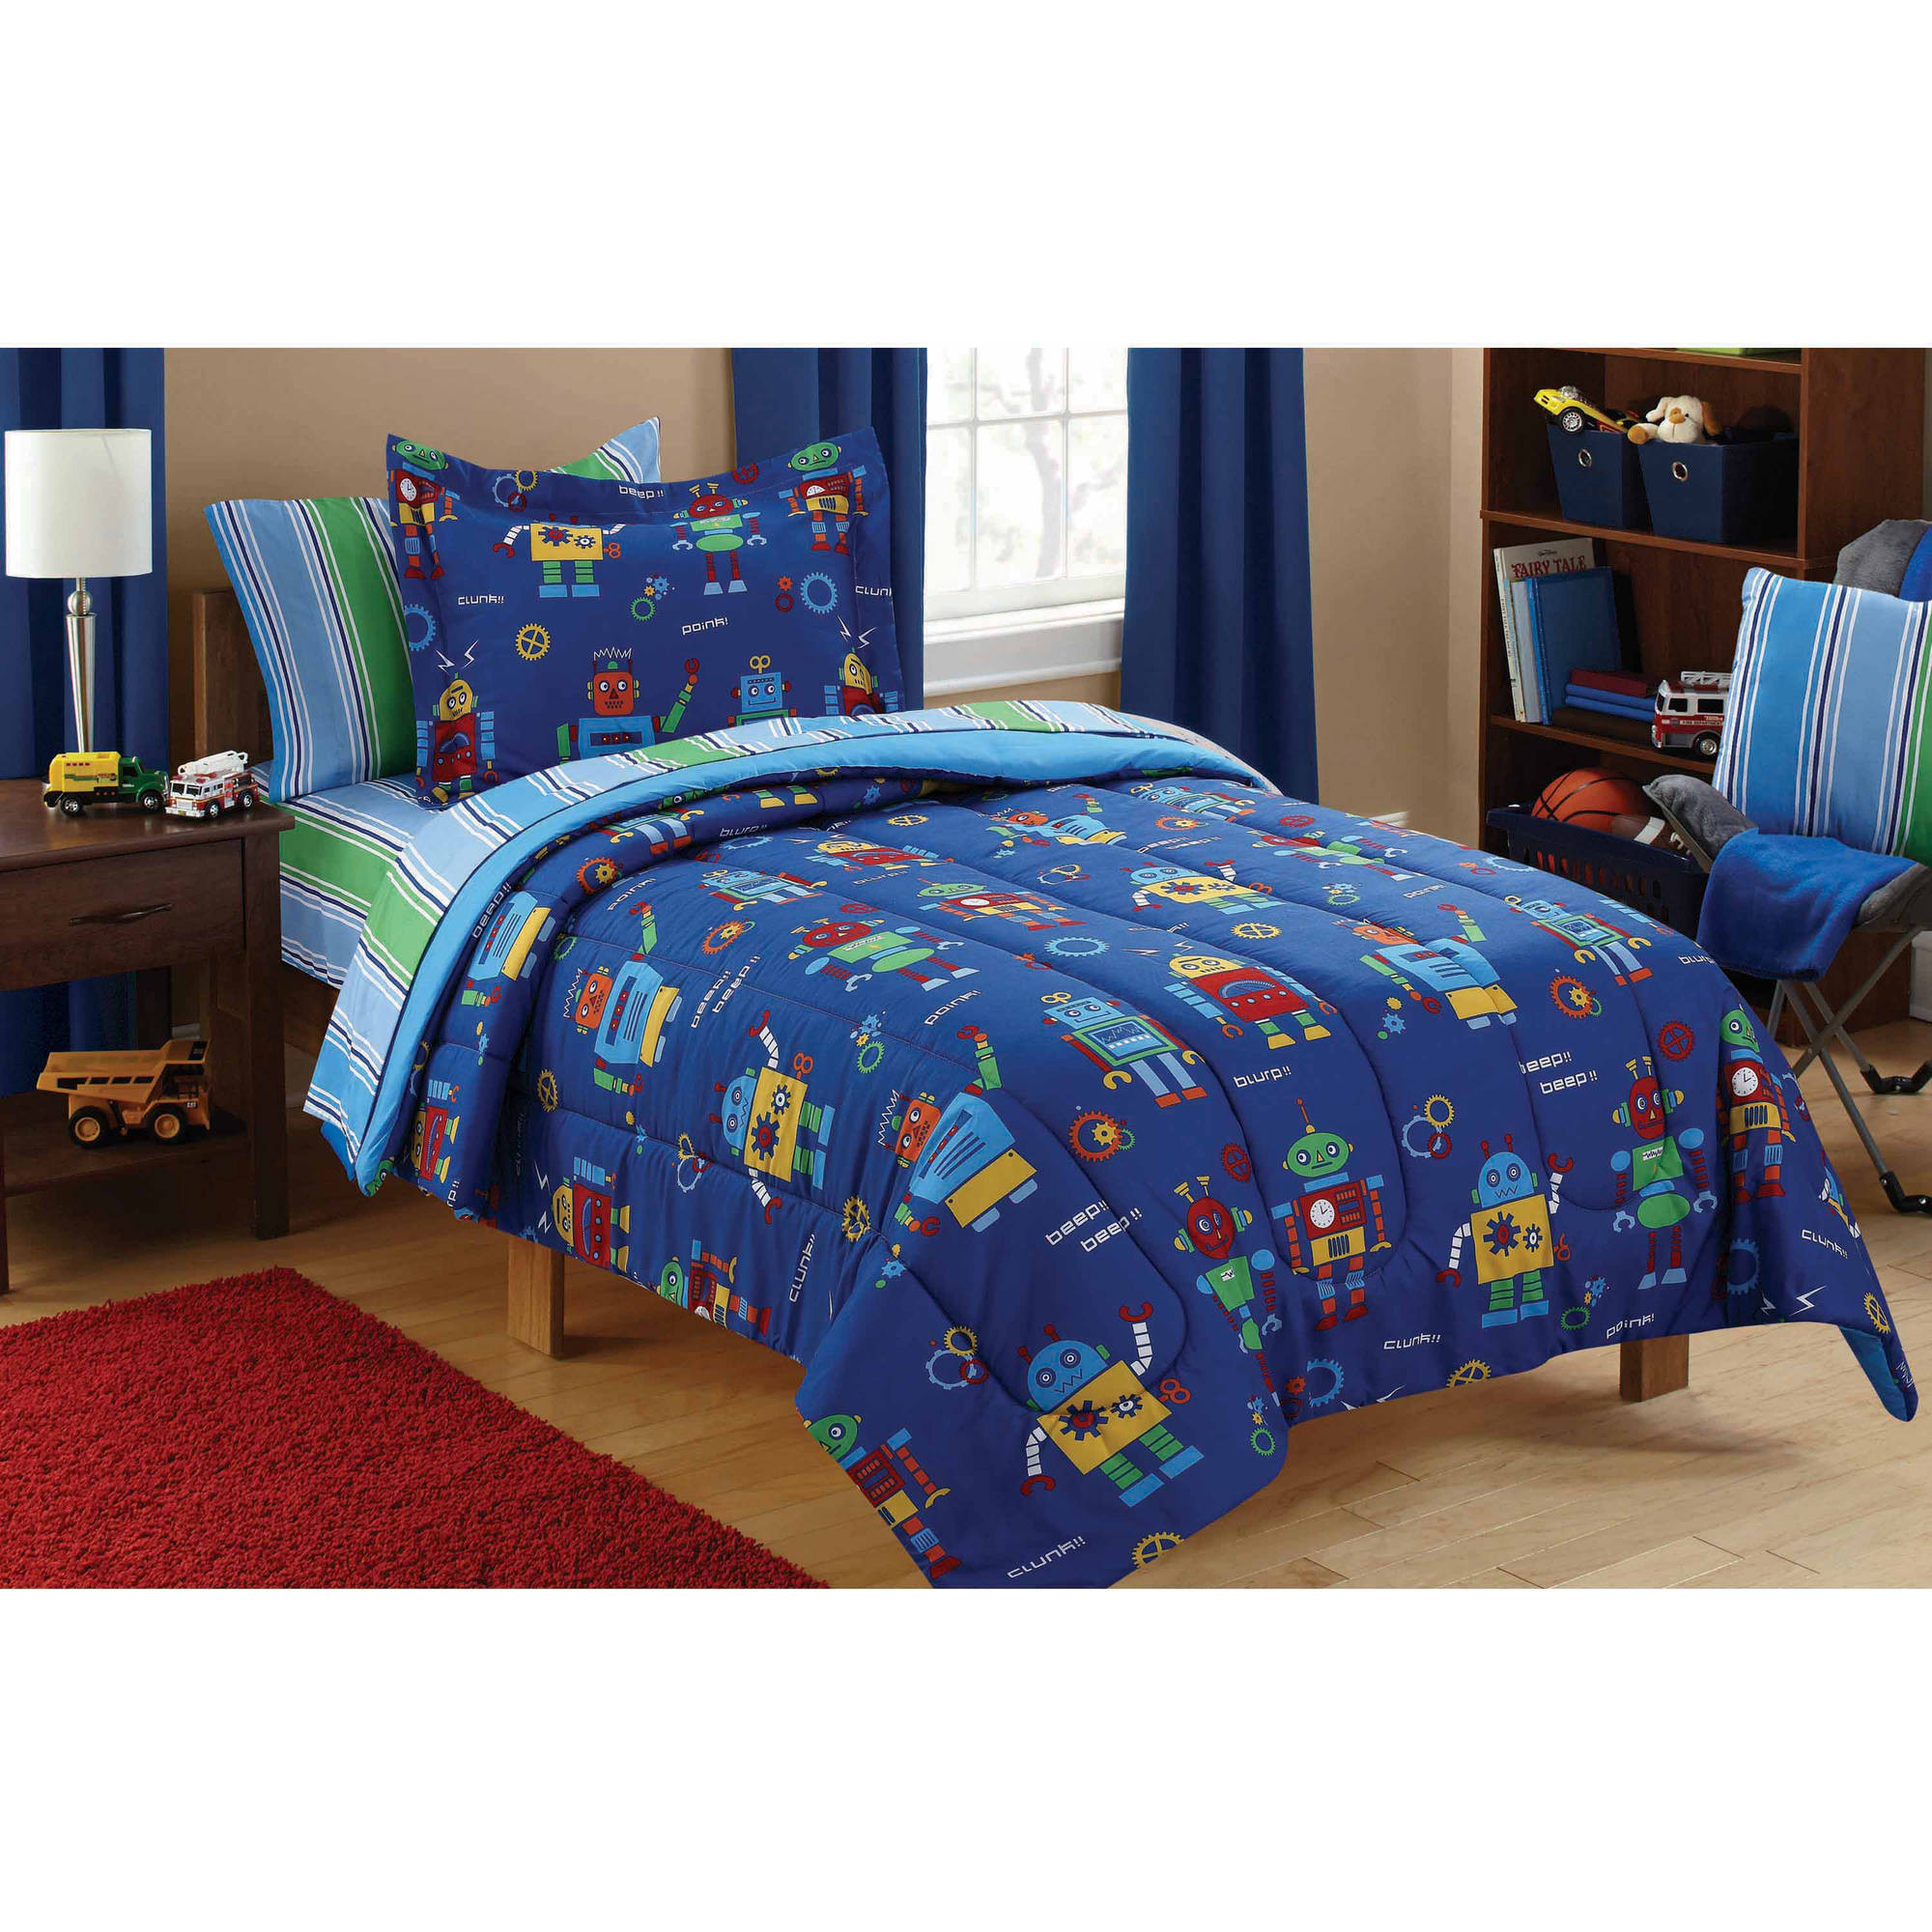 Walmart Bedroom Sets For Kids
 Mainstays Kids Robots Bed in a Bag Coordinating Bedding